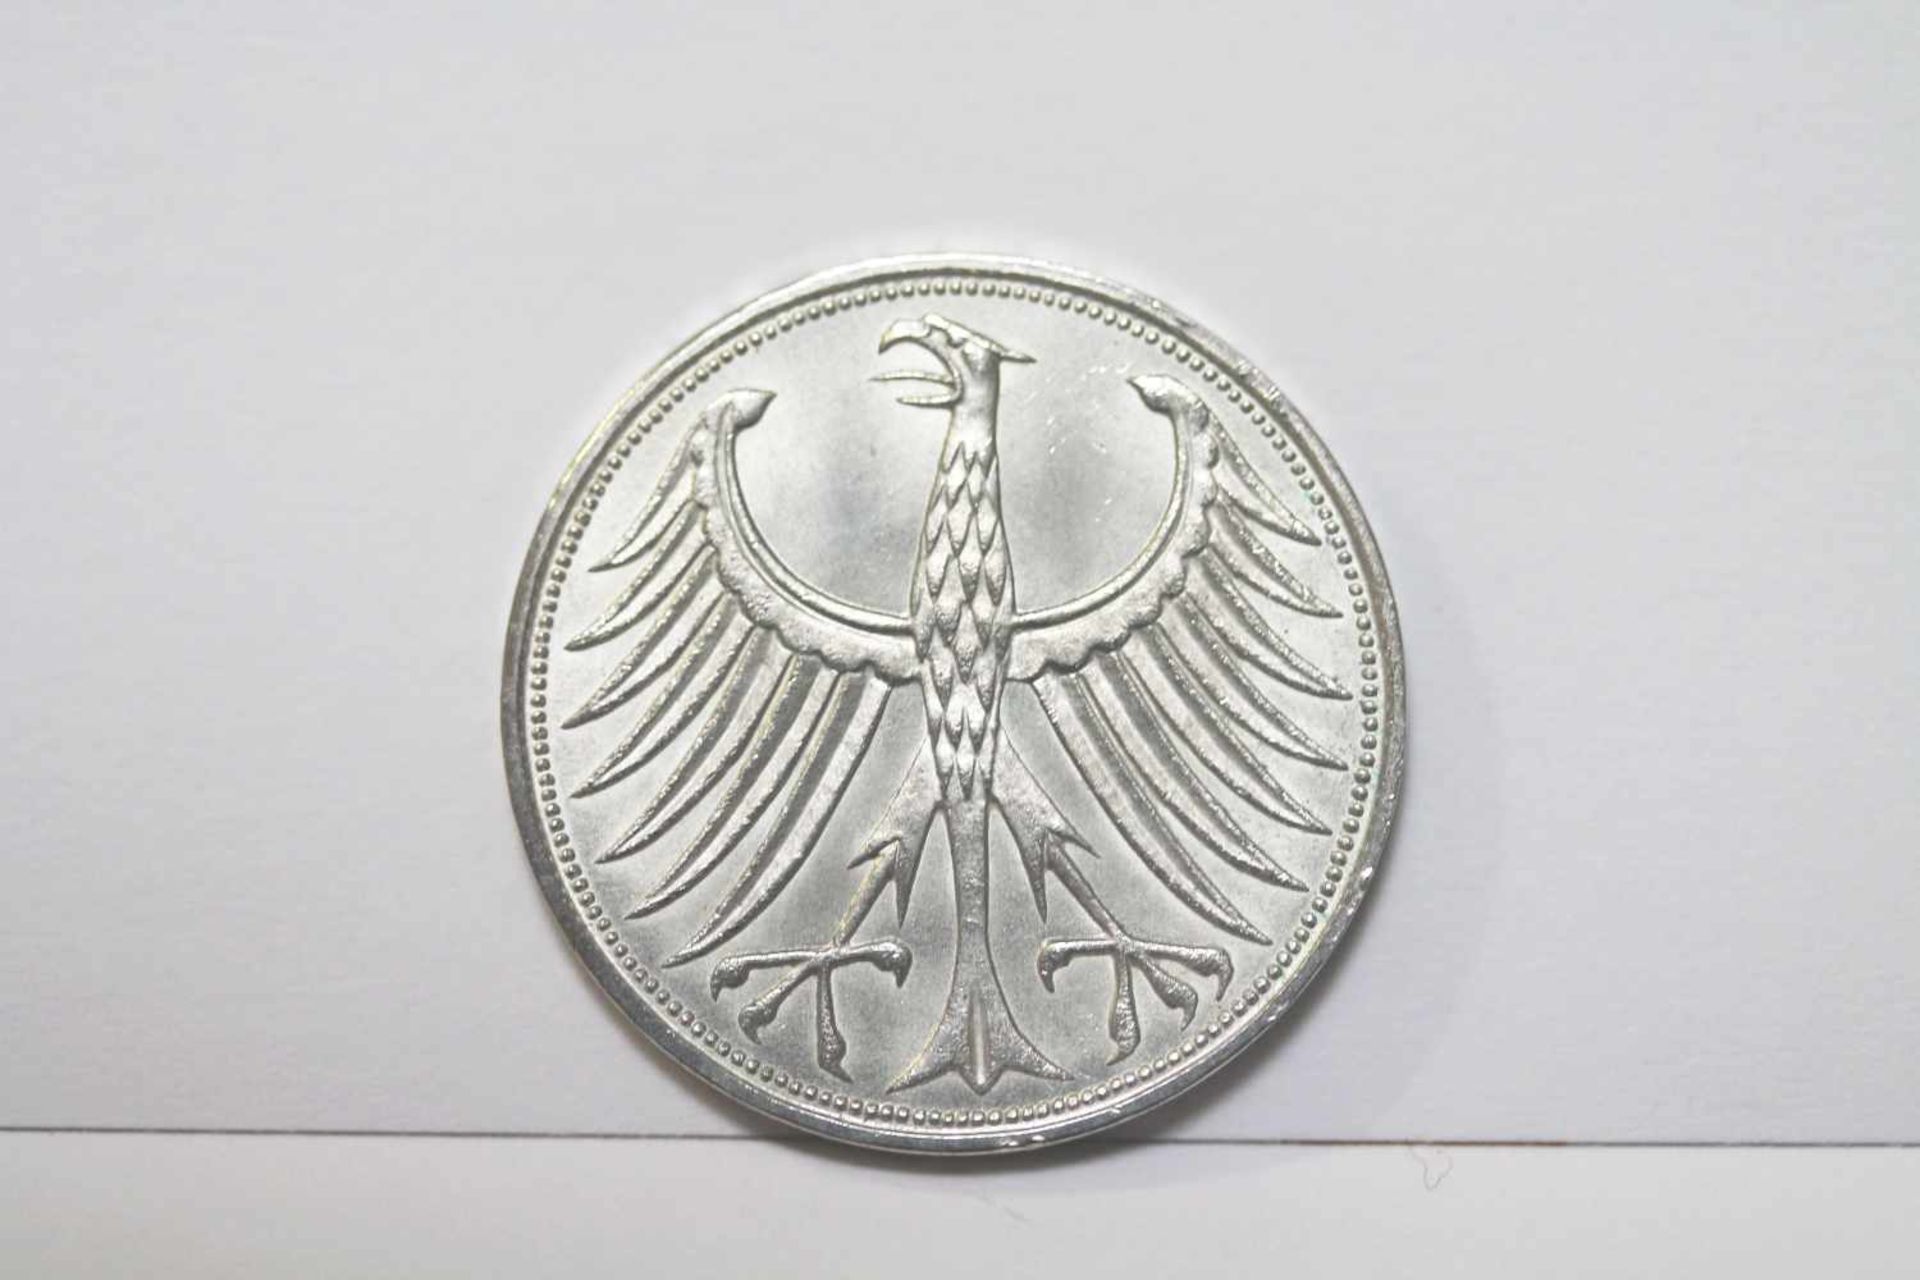 5 DM Silberadler 1967 J Bundesrepublik Deutschland - Bild 2 aus 2